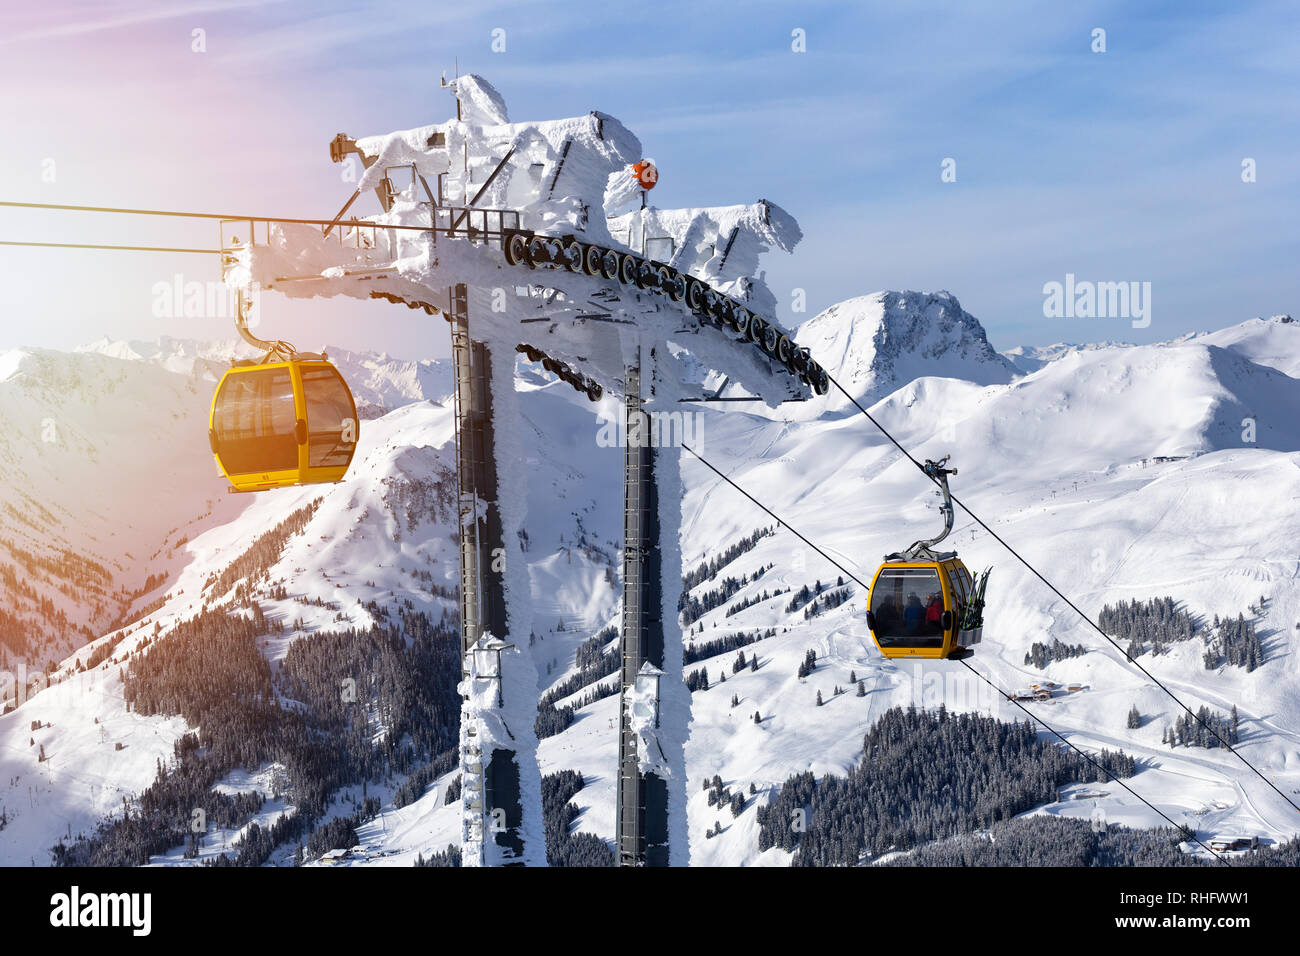 Ski resort. Gondola lift. Cabin of ski-lift in the ski resort Stock Photo